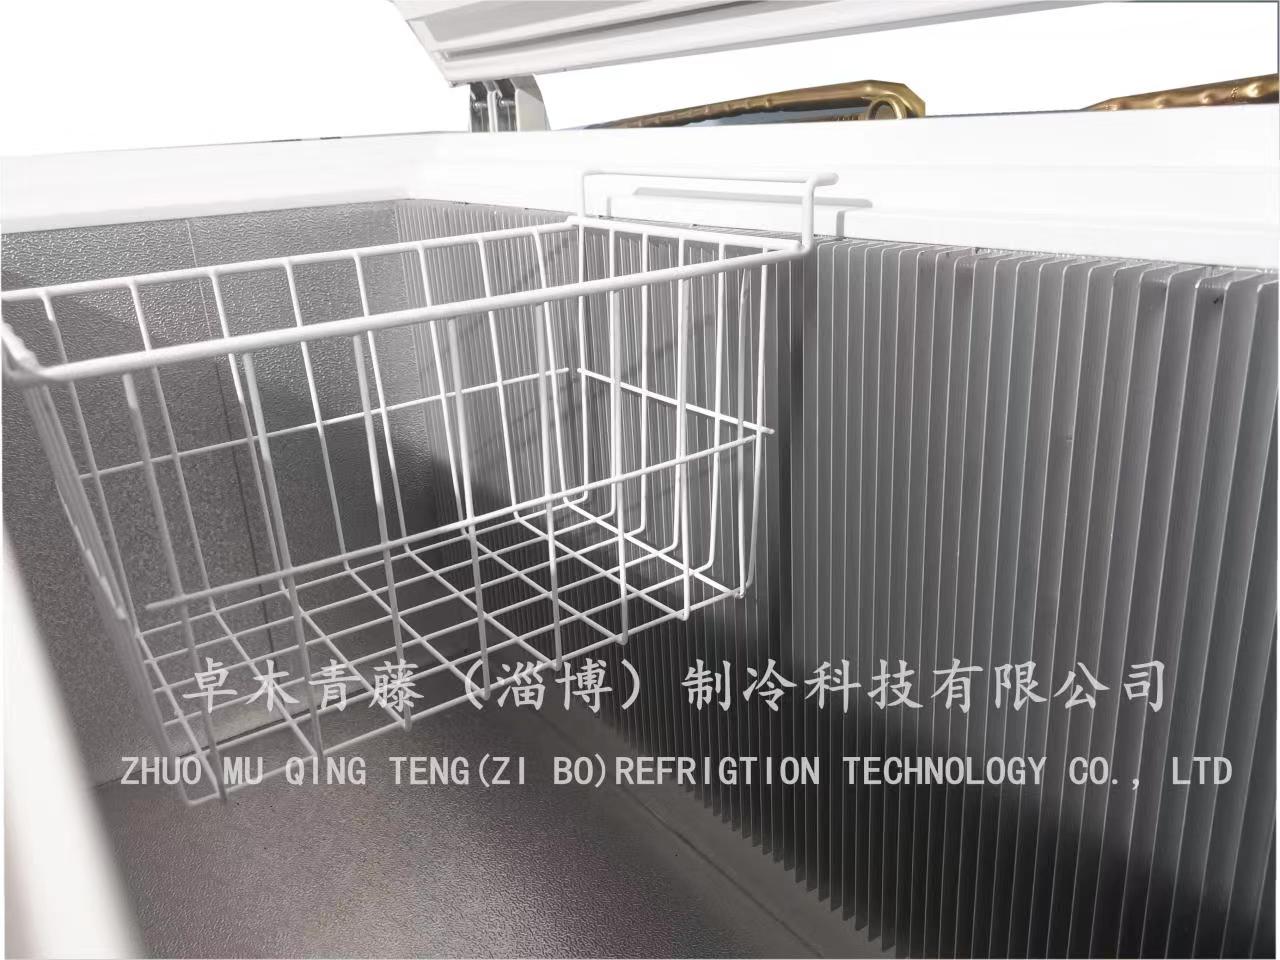 淄博市冰柜厂家大容量燃气式冰箱冰柜XD-320 出口多个国家